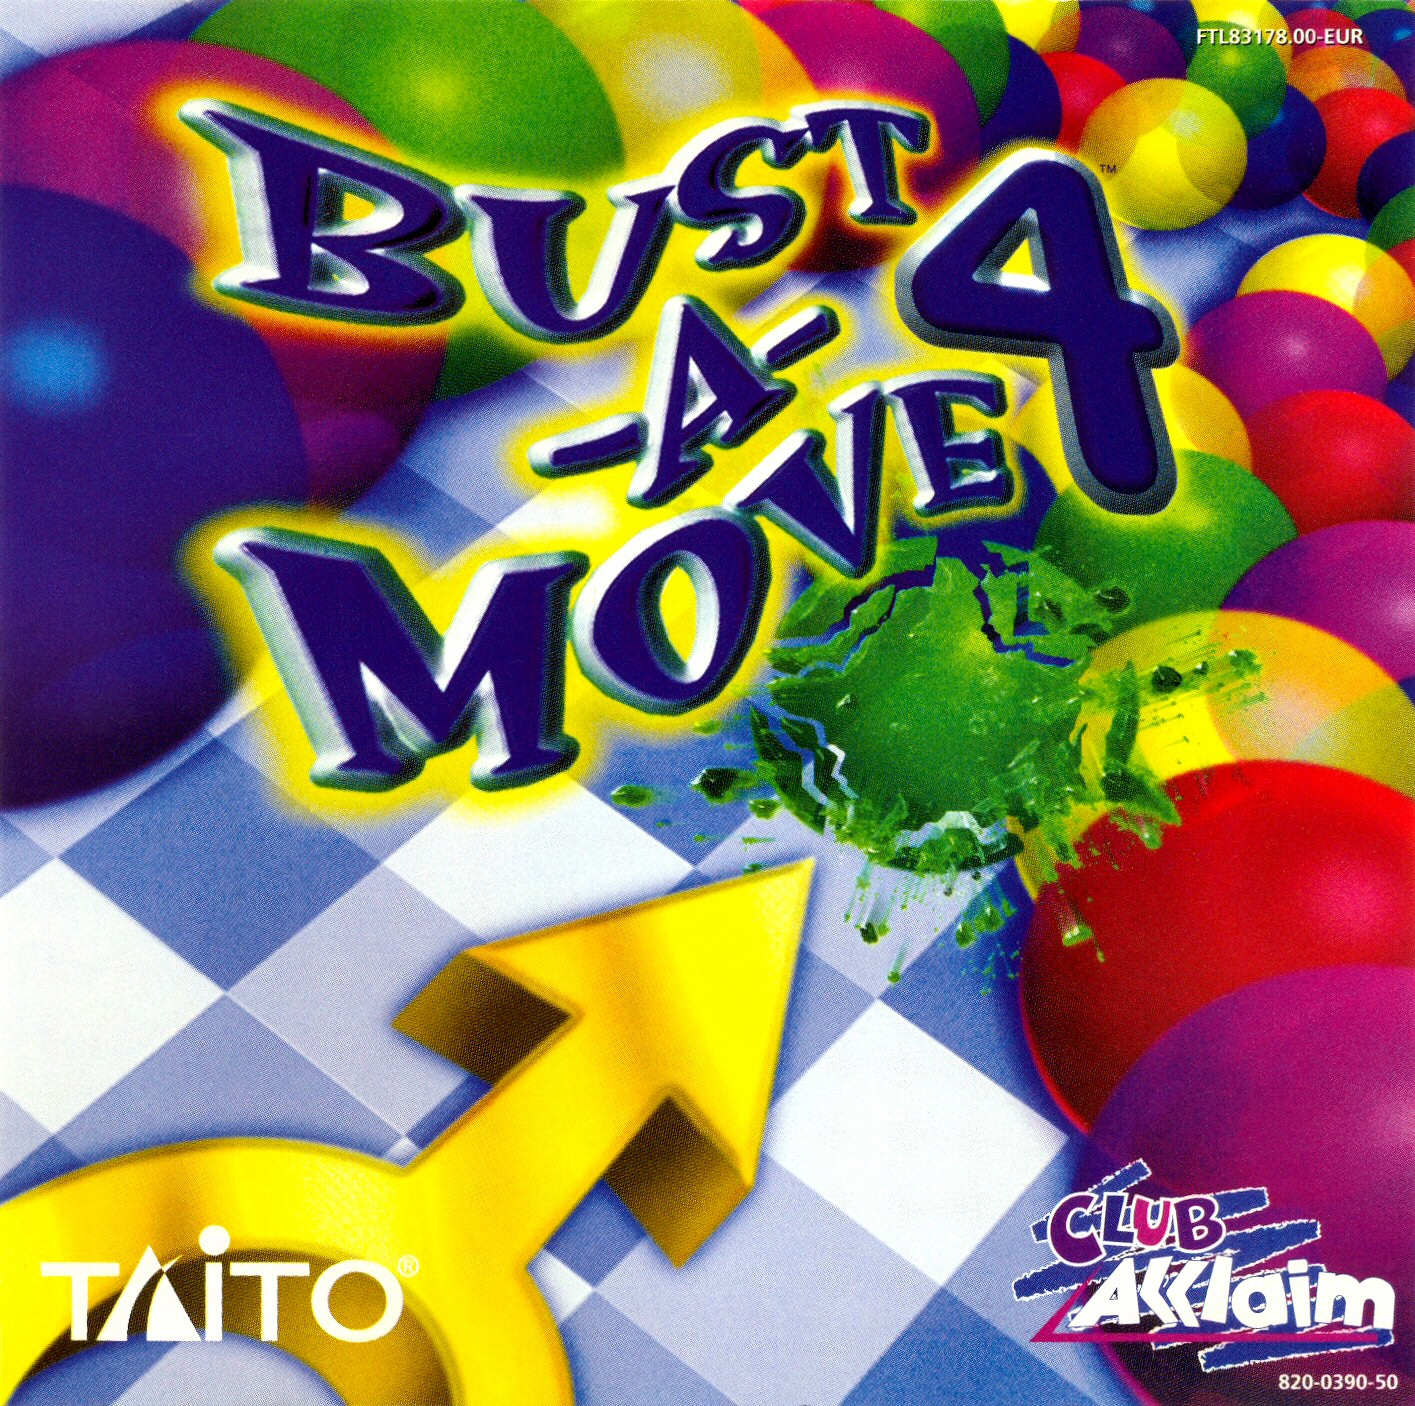 jaquette du jeu vidéo Bust-a-Move 4